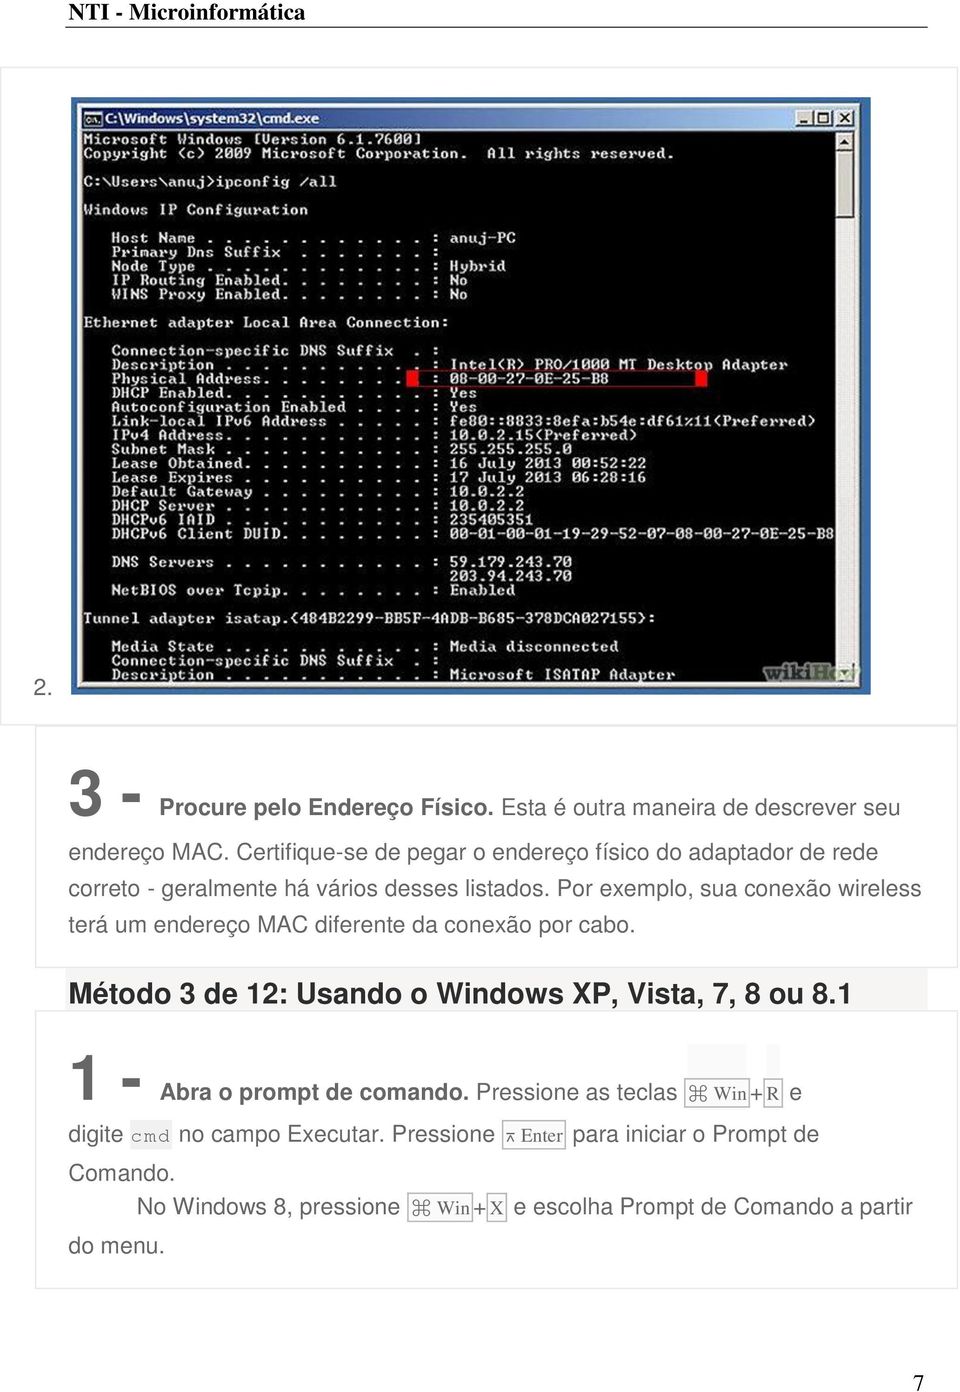 Por exemplo, sua conexão wireless terá um endereço MAC diferente da conexão por cabo. Método 3 de 12: Usando o Windows XP, Vista, 7, 8 ou 8.